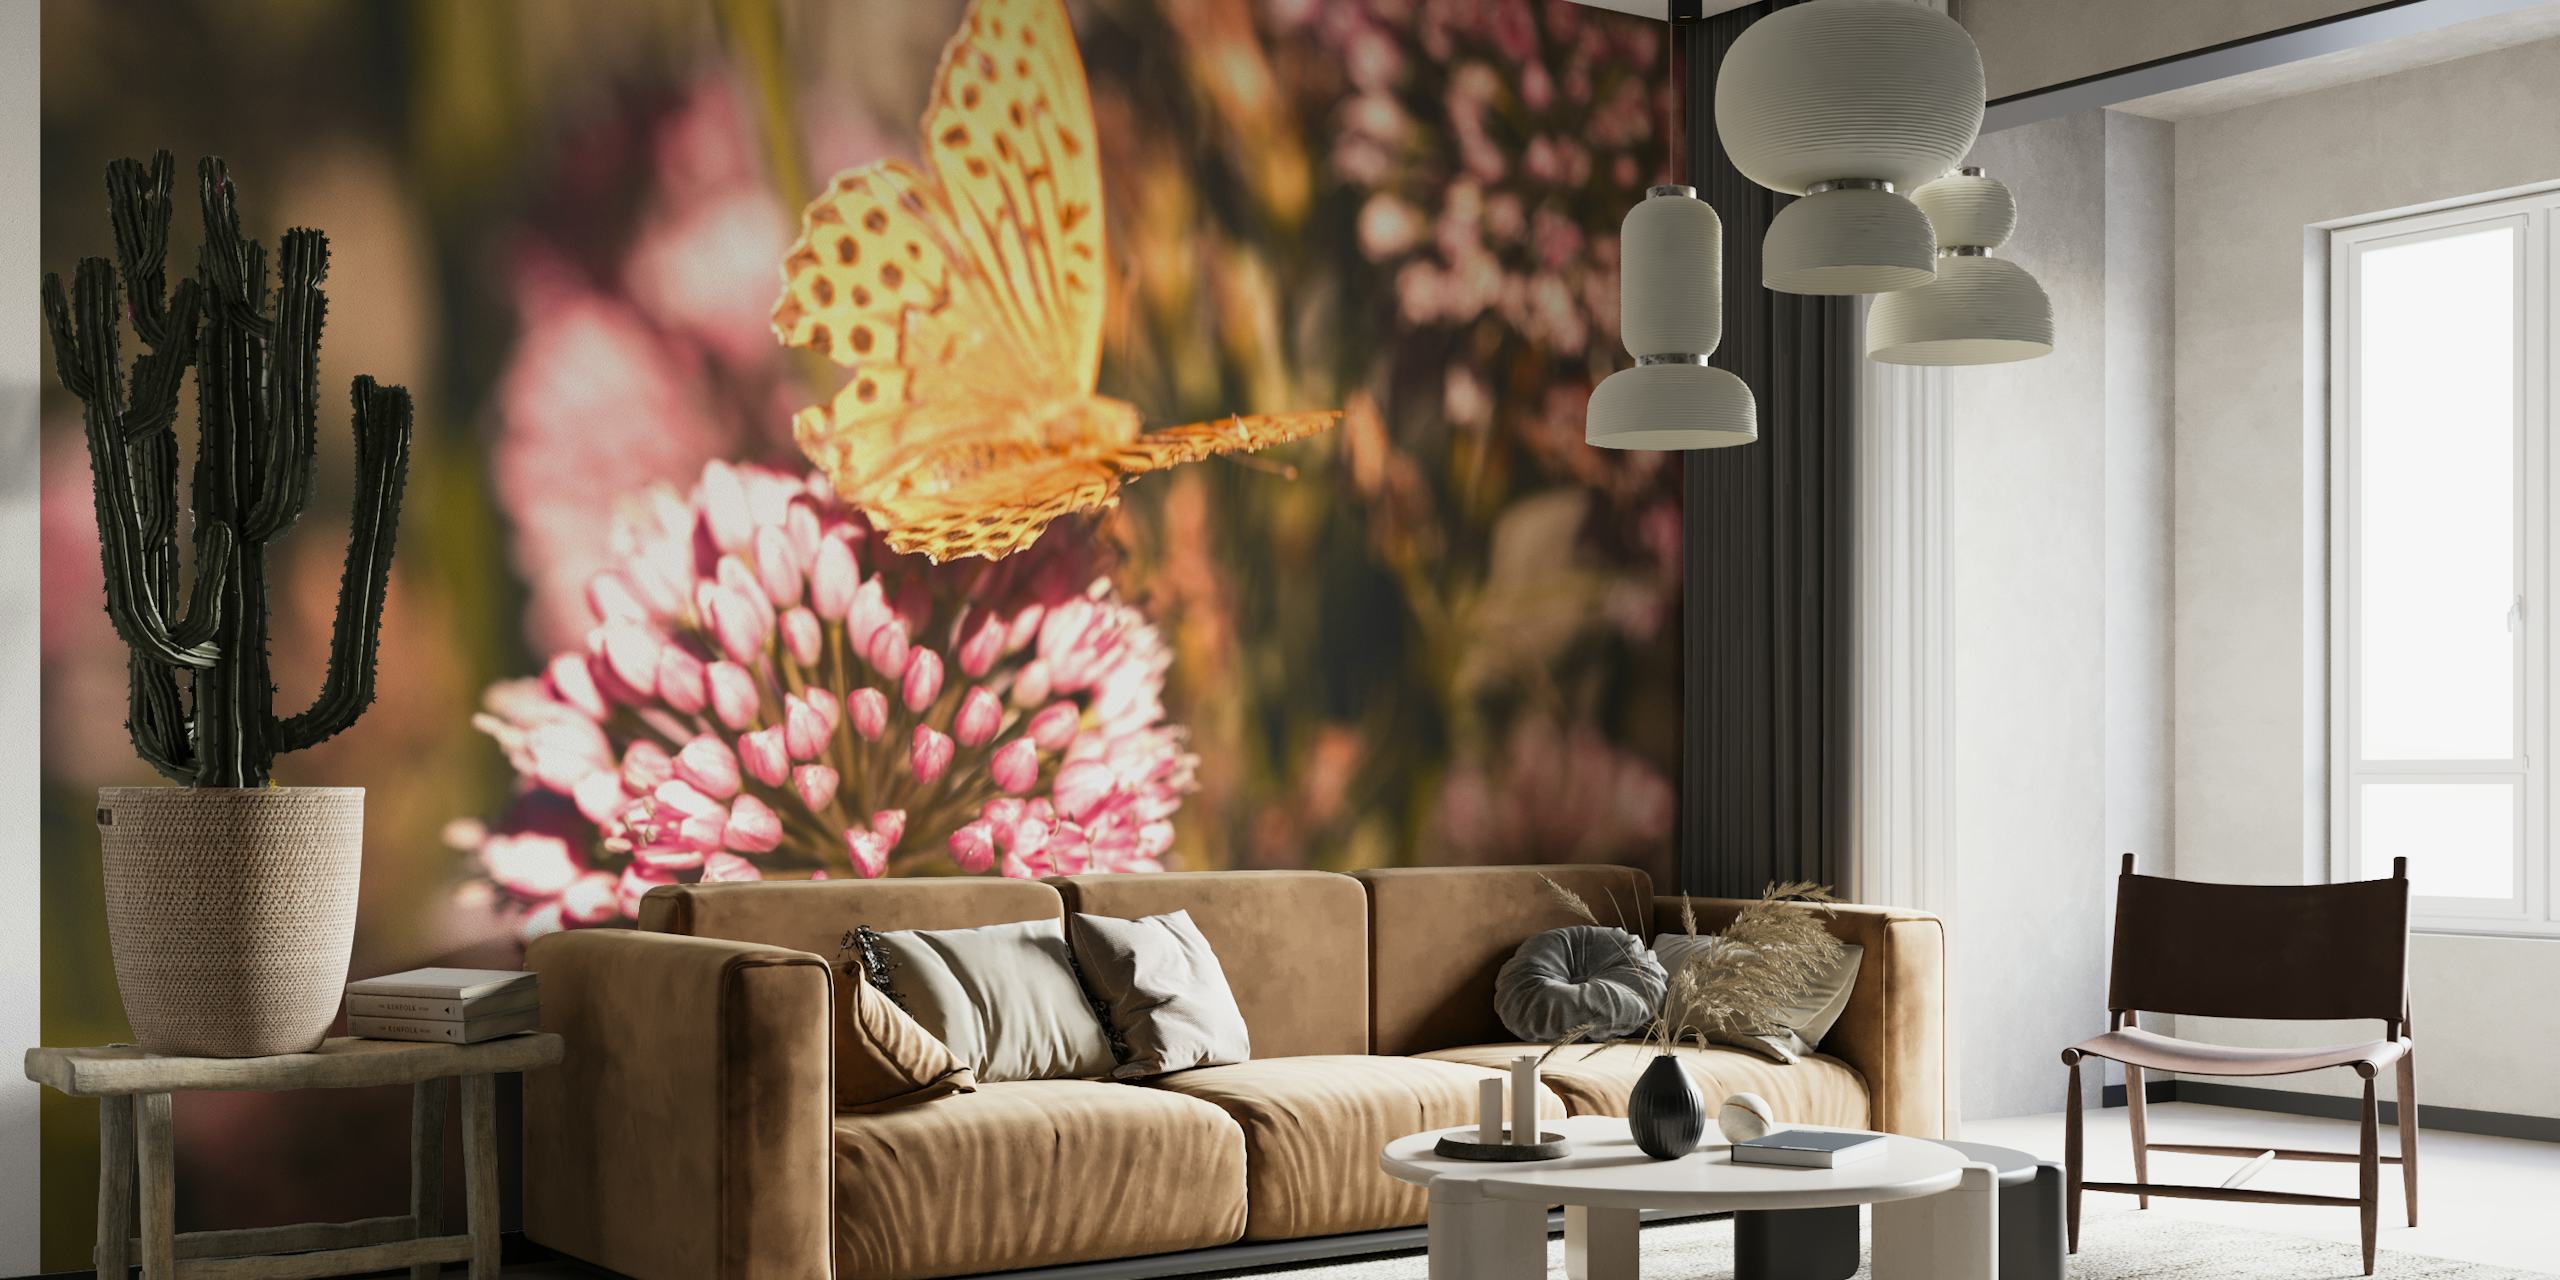 Uma borboleta empoleirada em uma flor, aparecendo no mural de parede 'Butterfly at Work'.